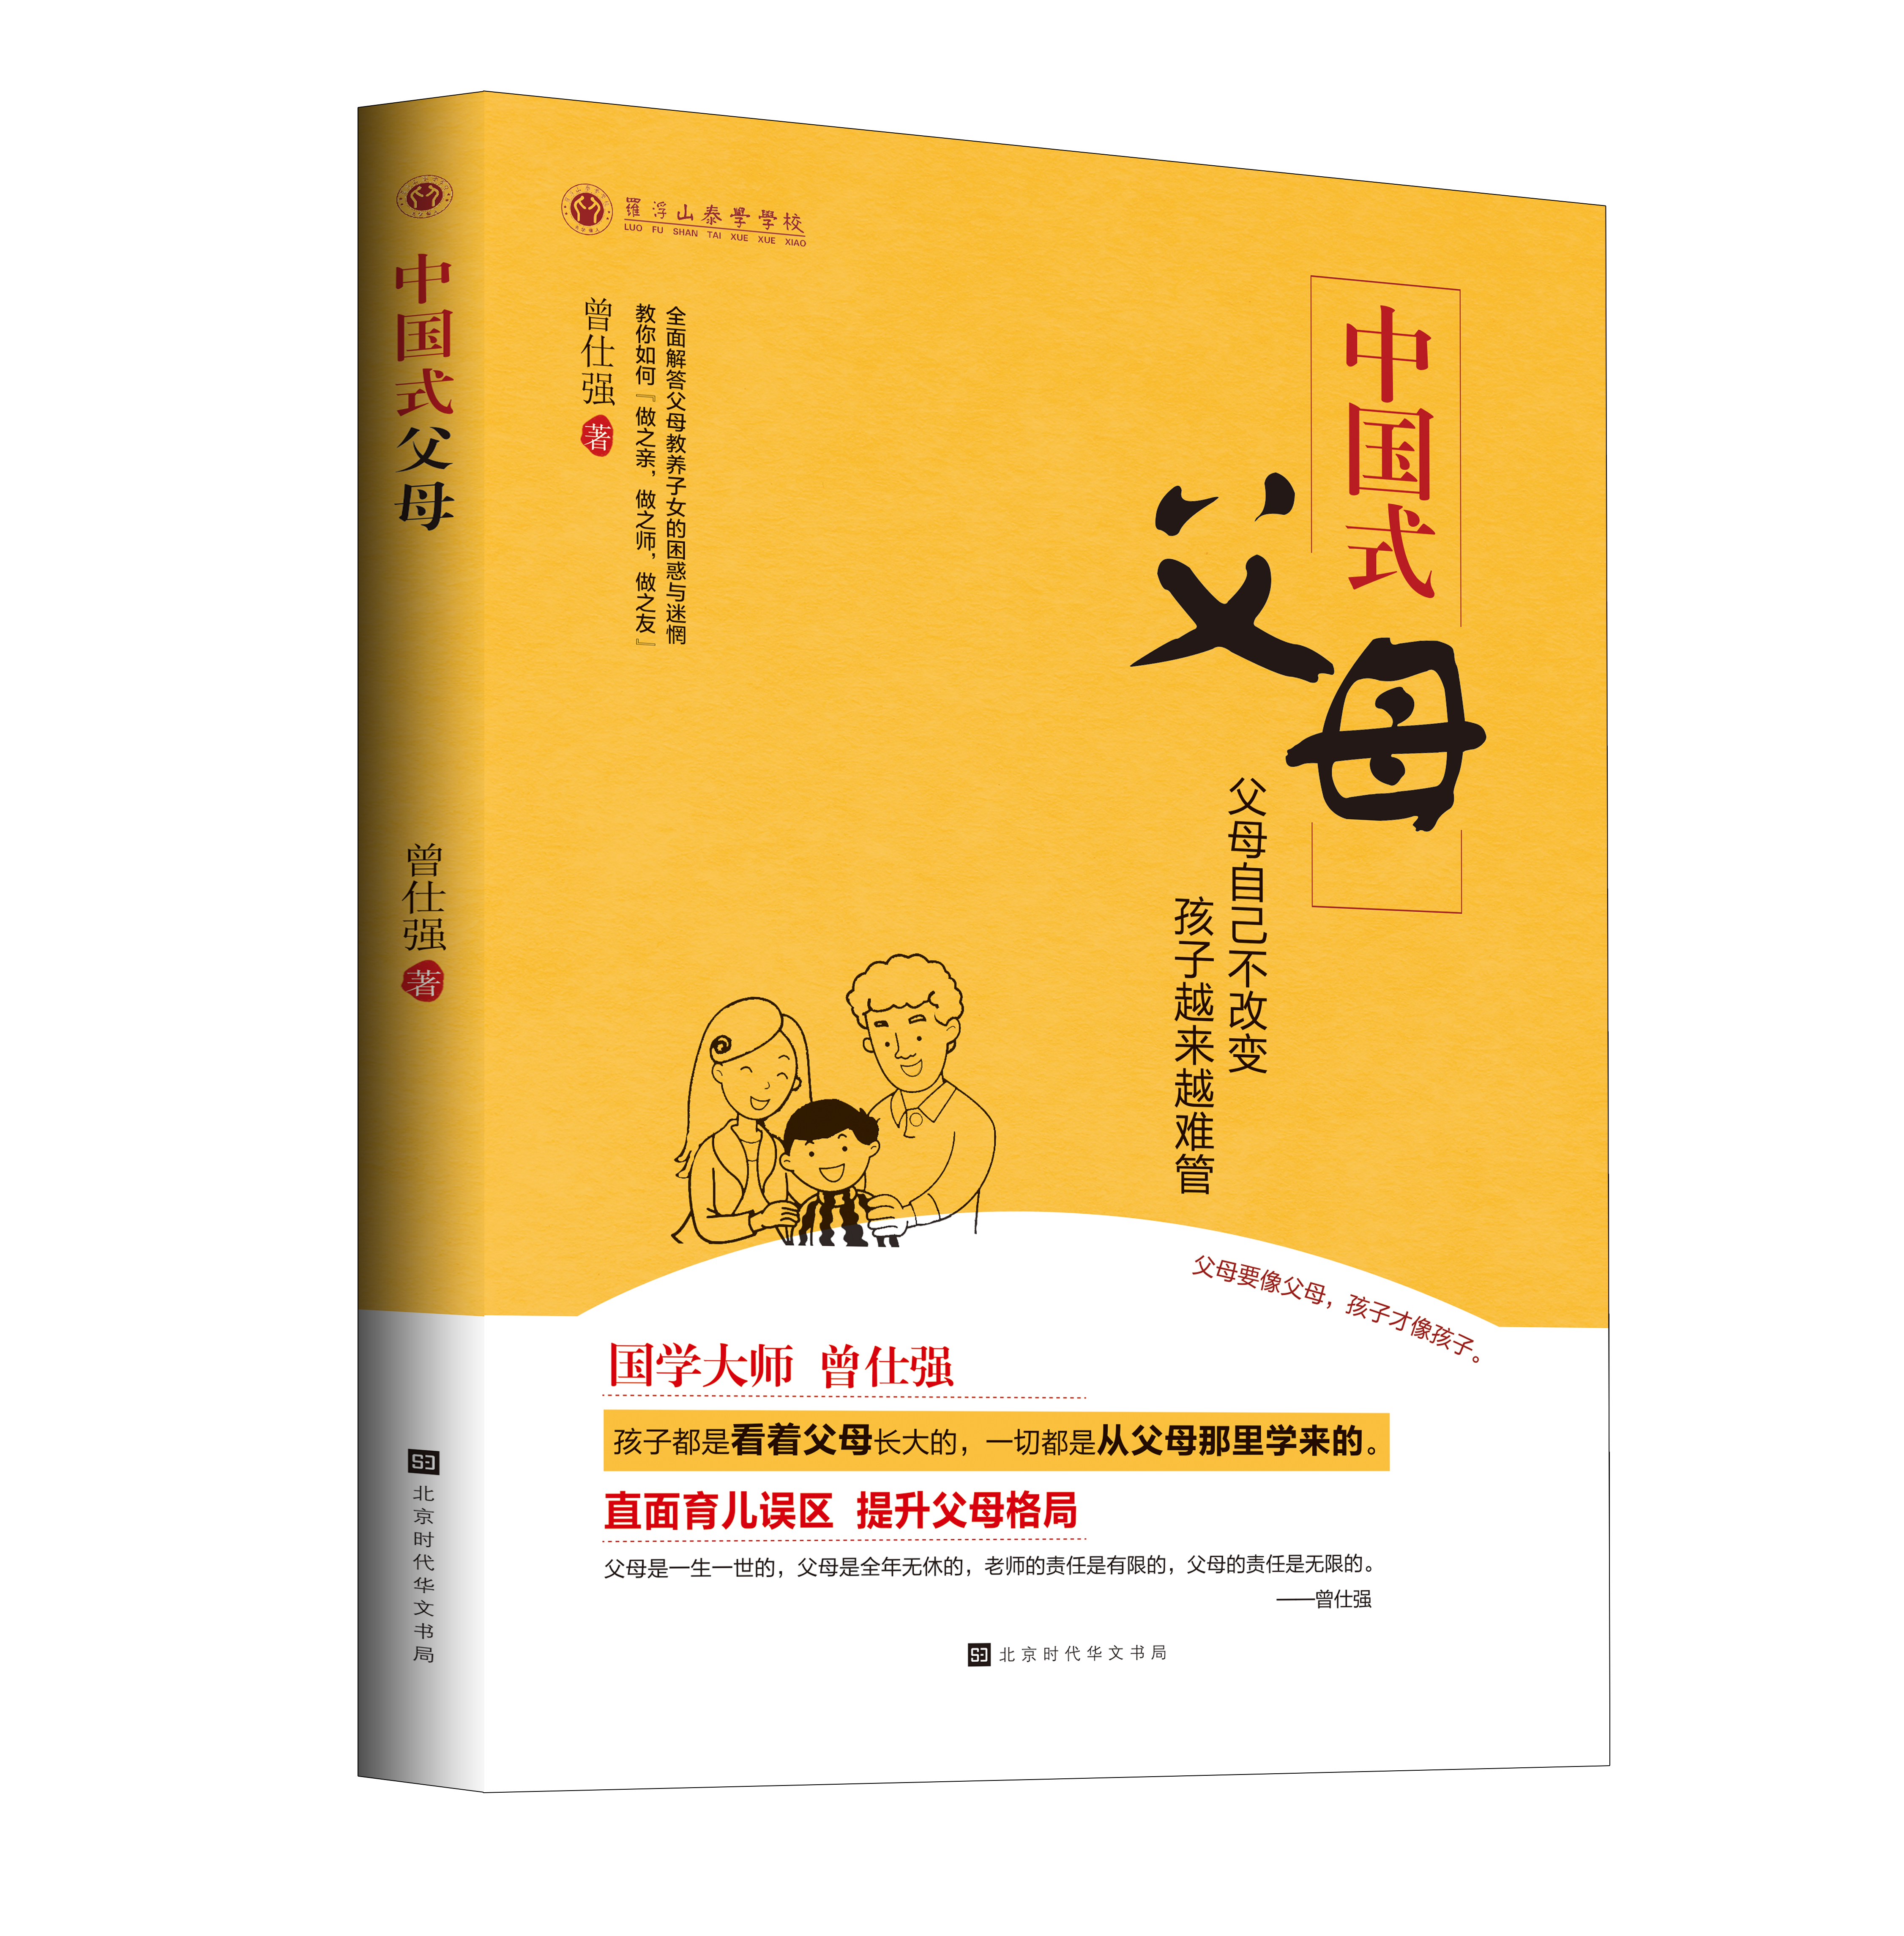 【良心网】《中国式父母 》 曾仕强全面解答父母教养子女的困惑与迷惘